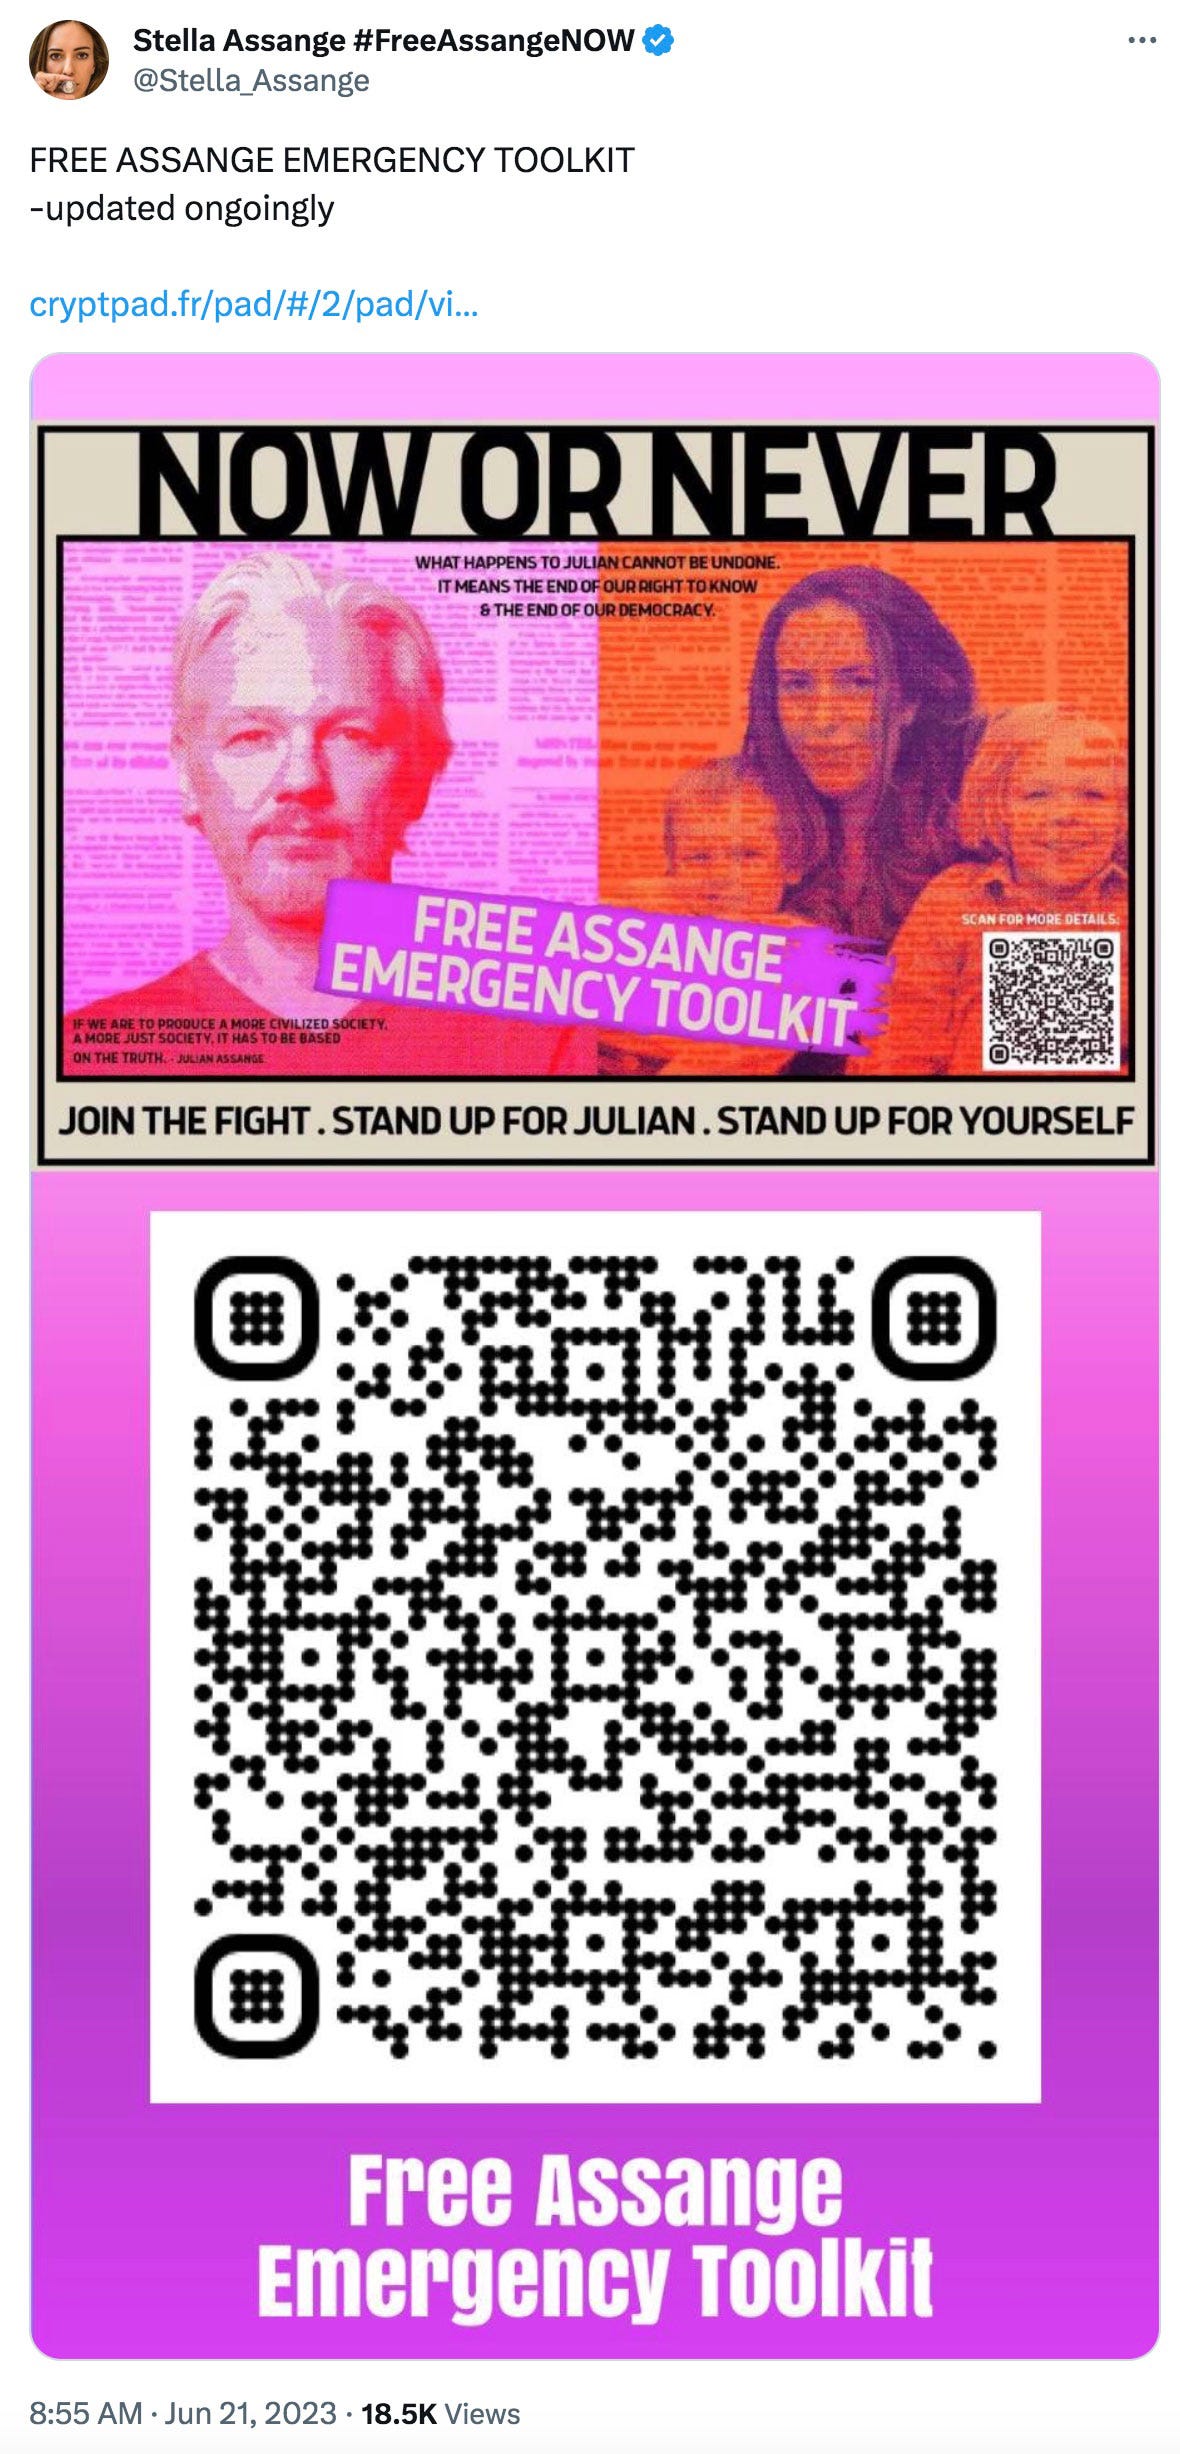 Free Assange Emergency Toolkit